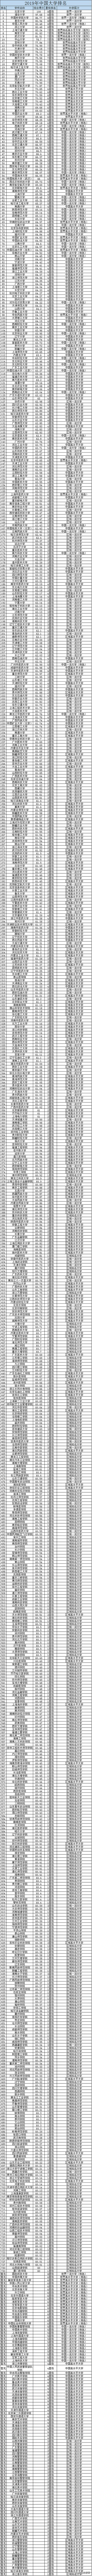 2019年中国大学排名（828所）